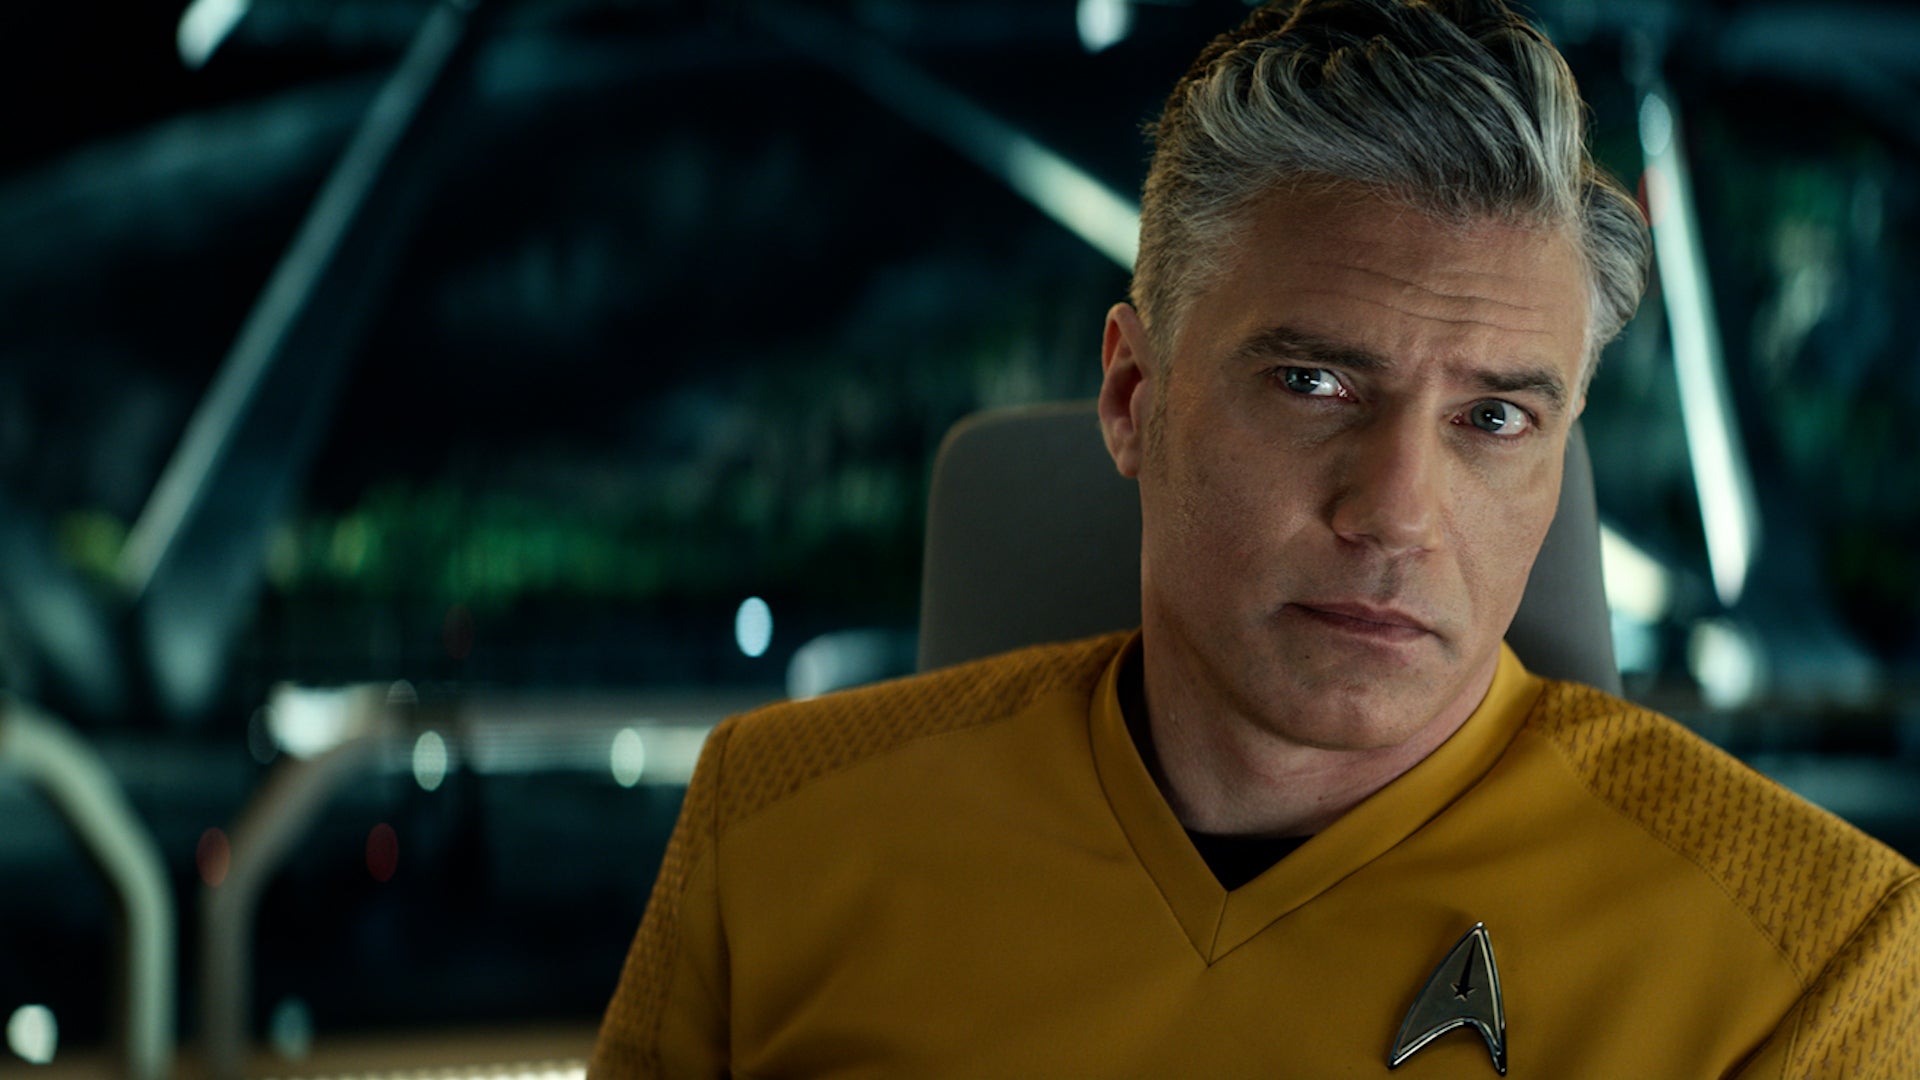 Anson Mount as Captain Pike in Star Trek Strange New World